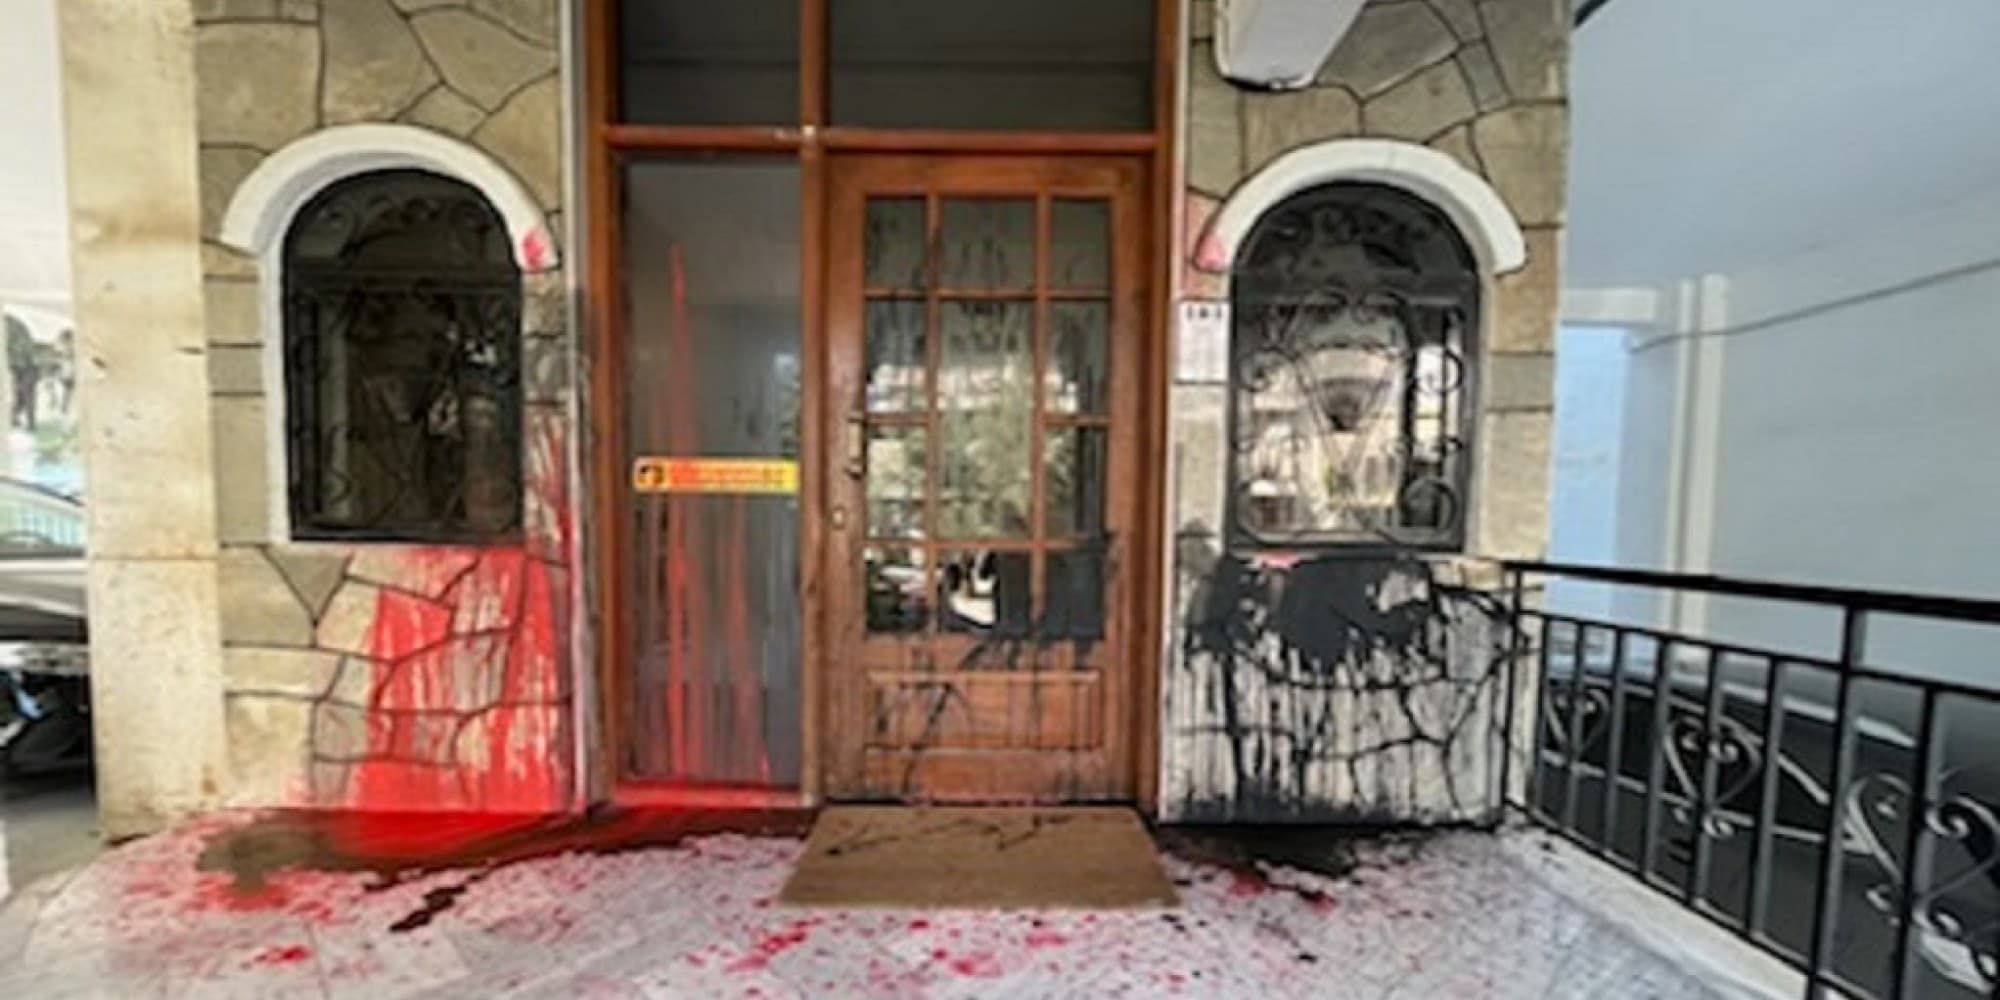 Άγνωστοι επιτέθηκαν με μπογιές στο σπίτι του βουλευτή της ΝΔ, Σάββα Αναστασιάδη στη Θεσσαλονίκη